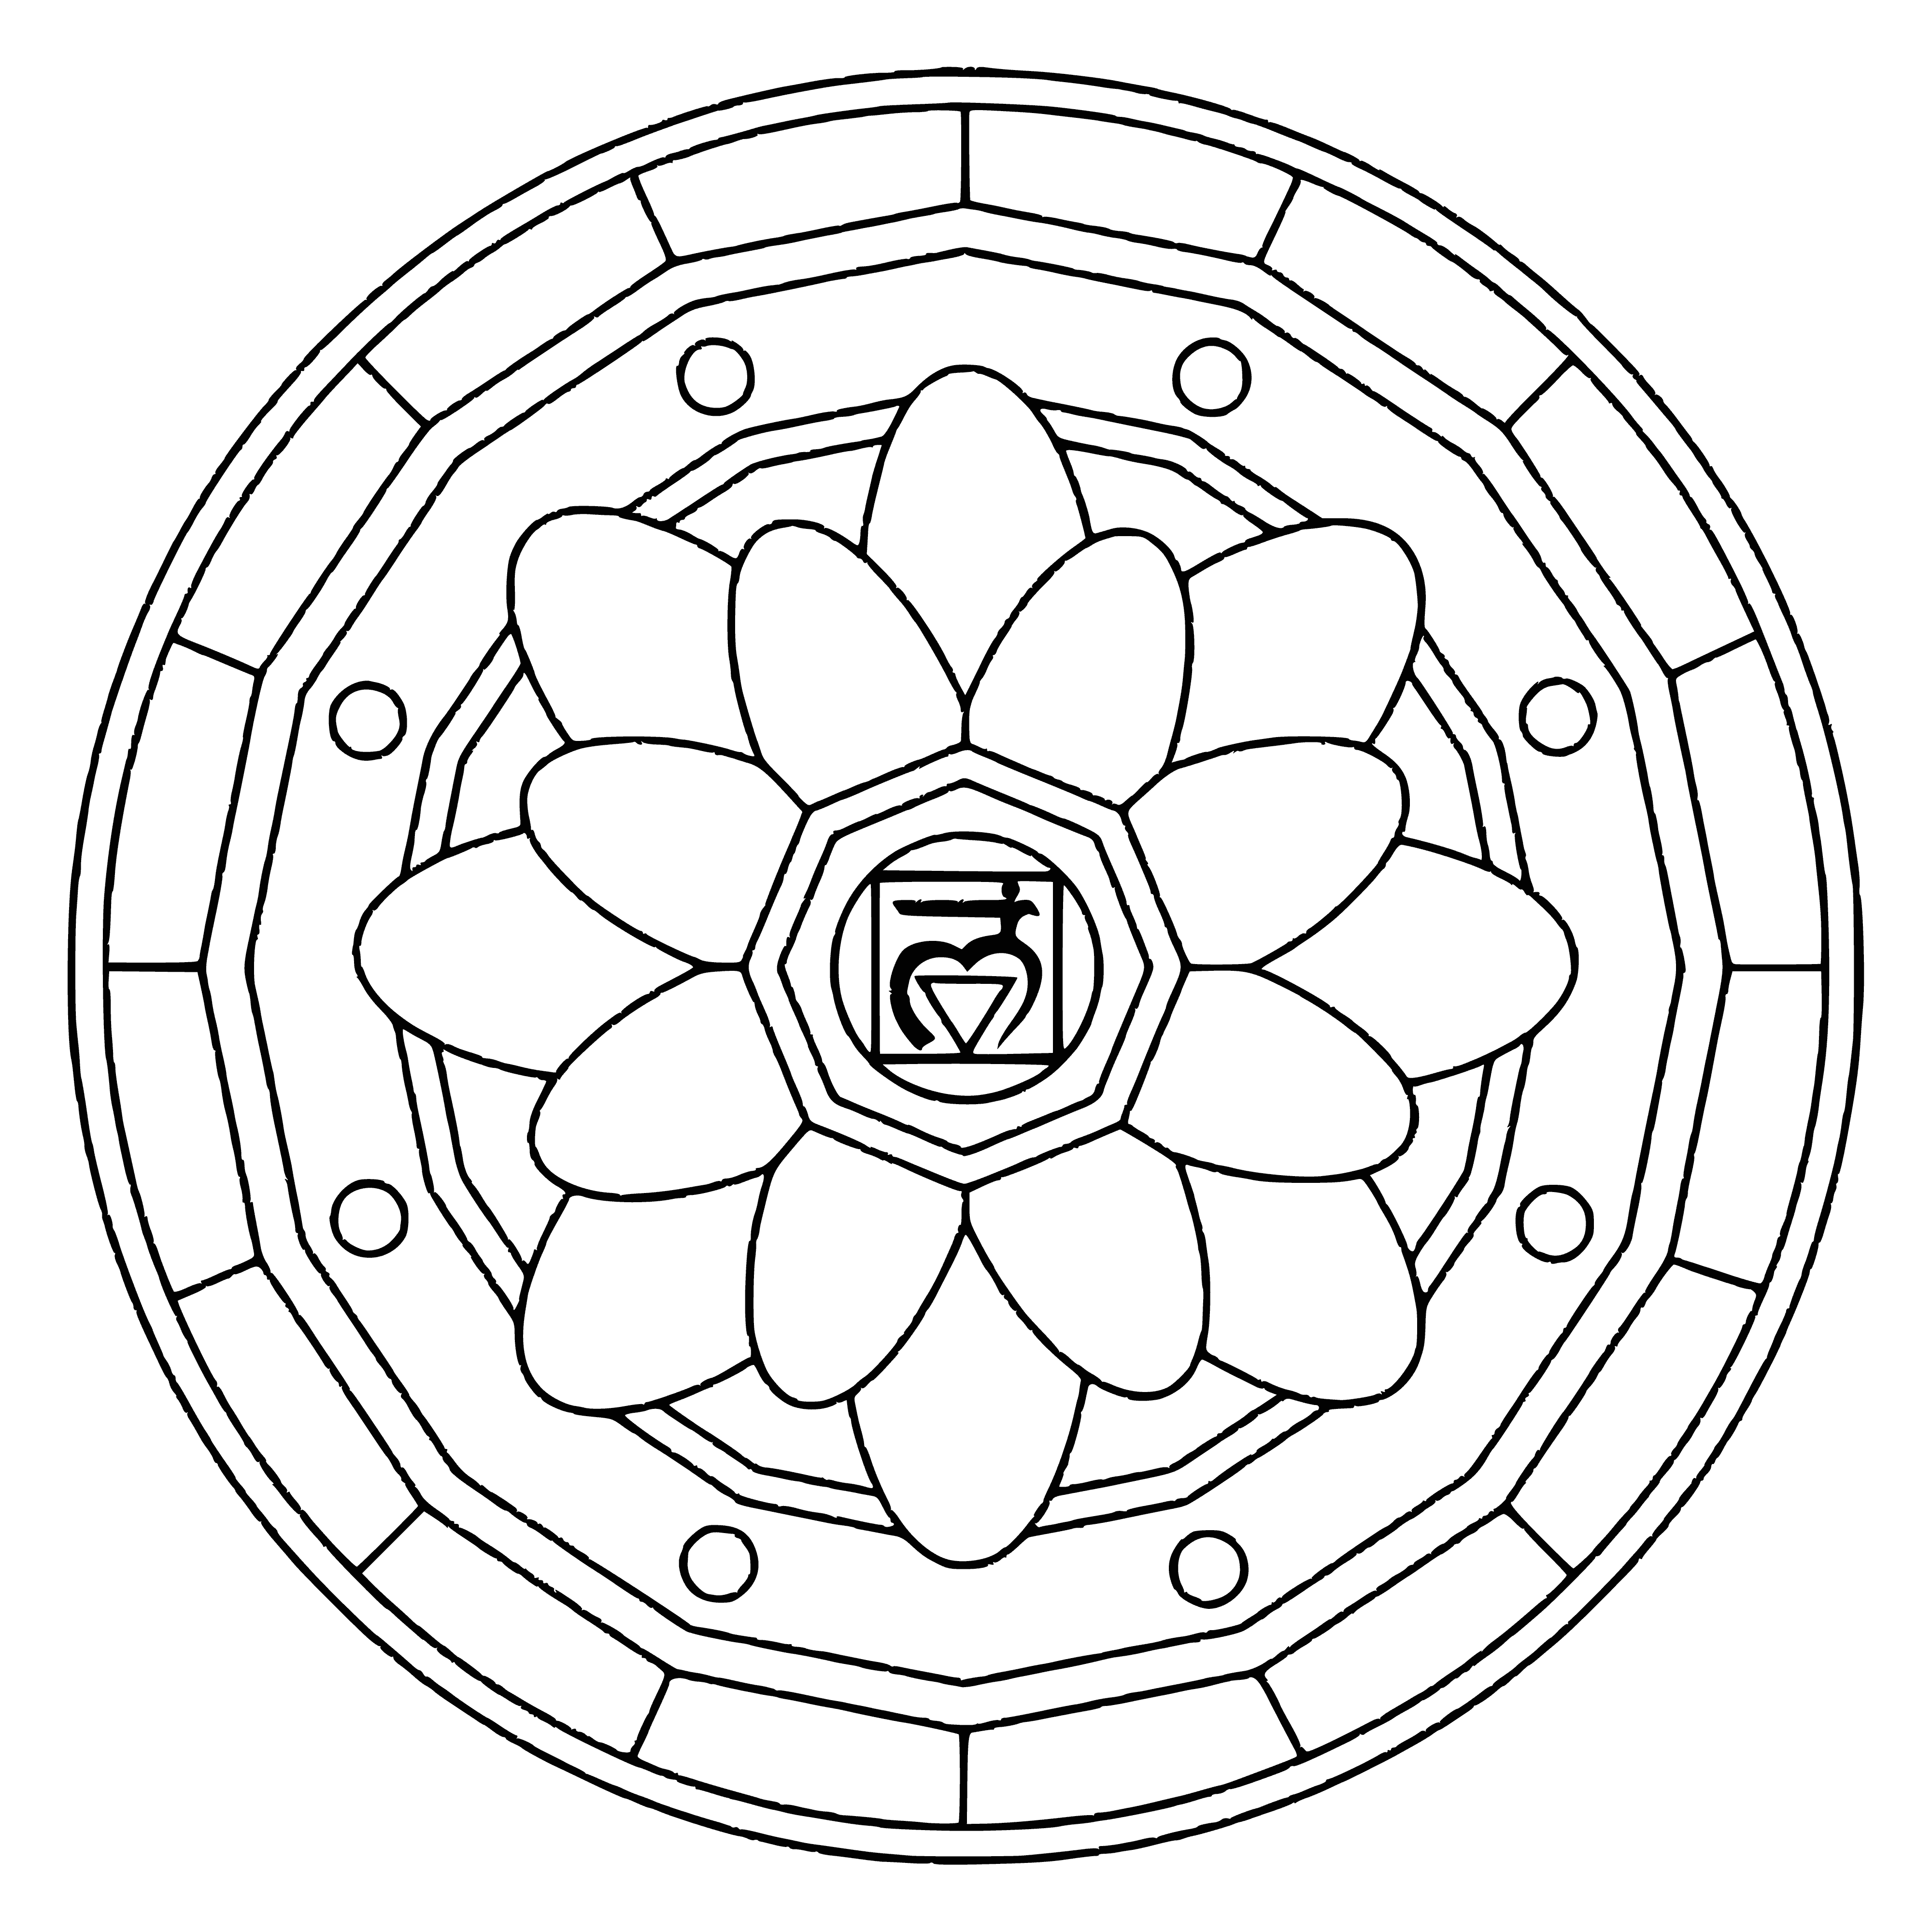 Mandala z symbolem Muladhara kolorowanka